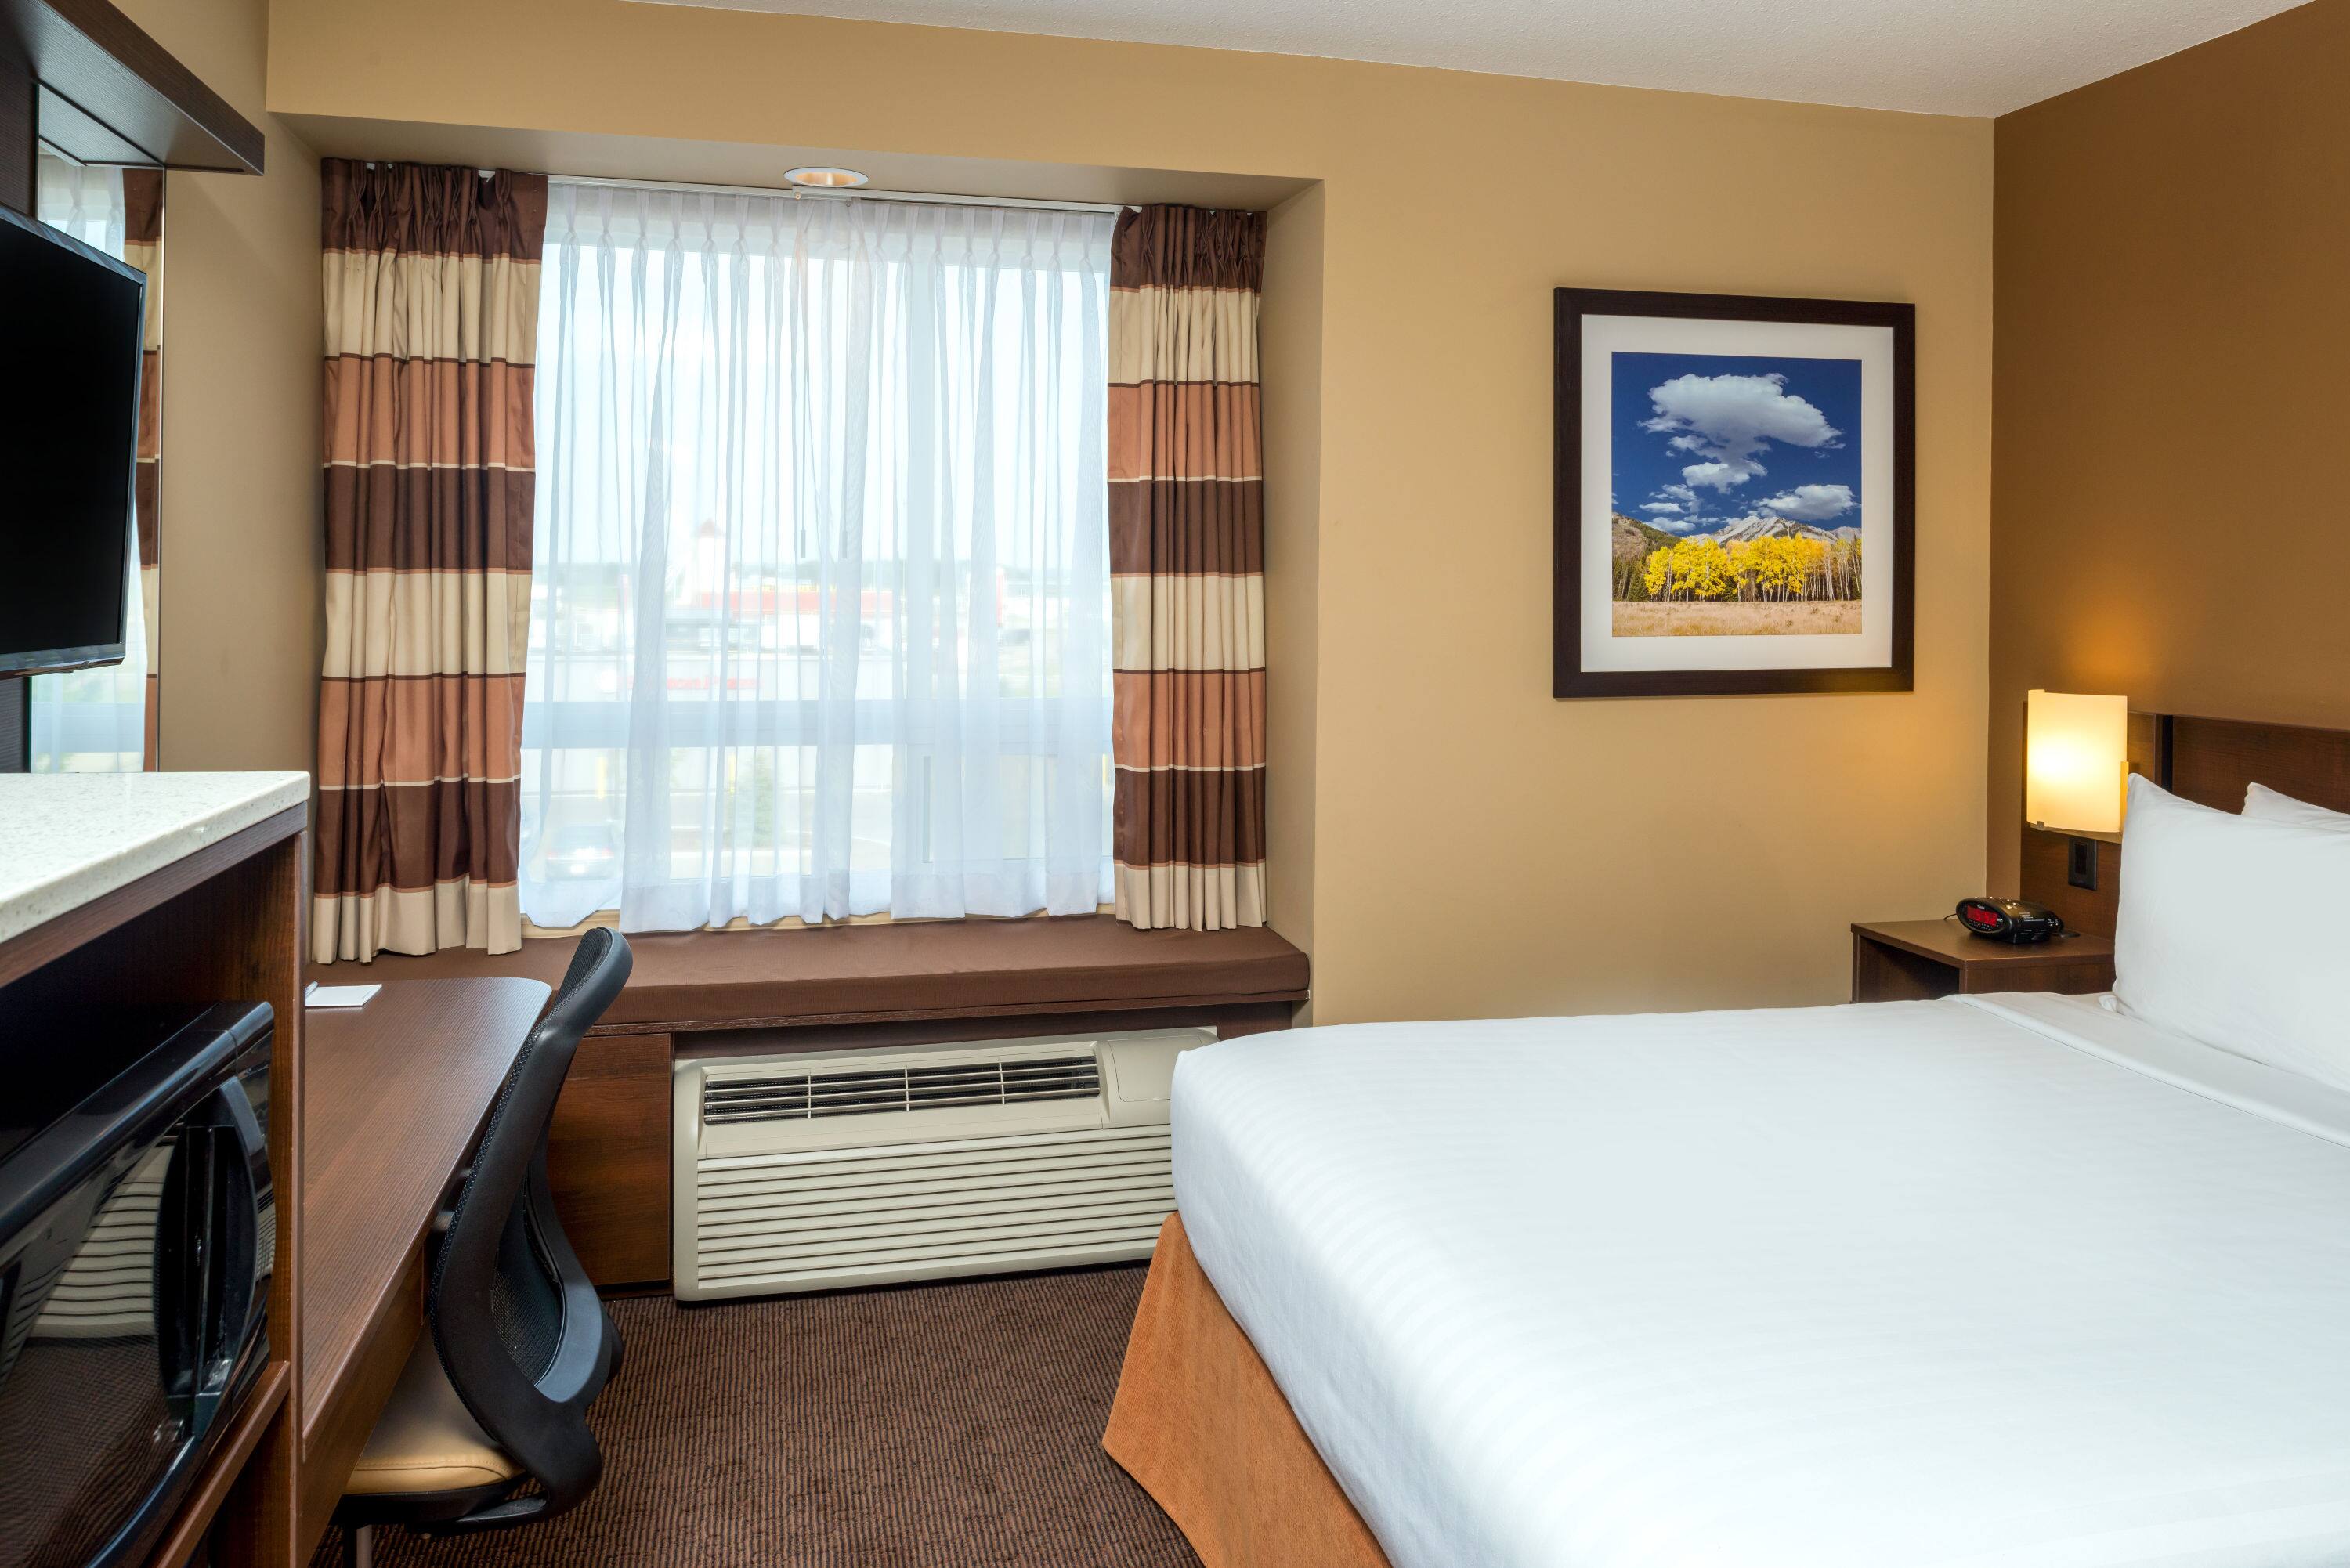 Microtel Inn Suites By Wyndham Red Deer Red Deer Ab Hotels - 